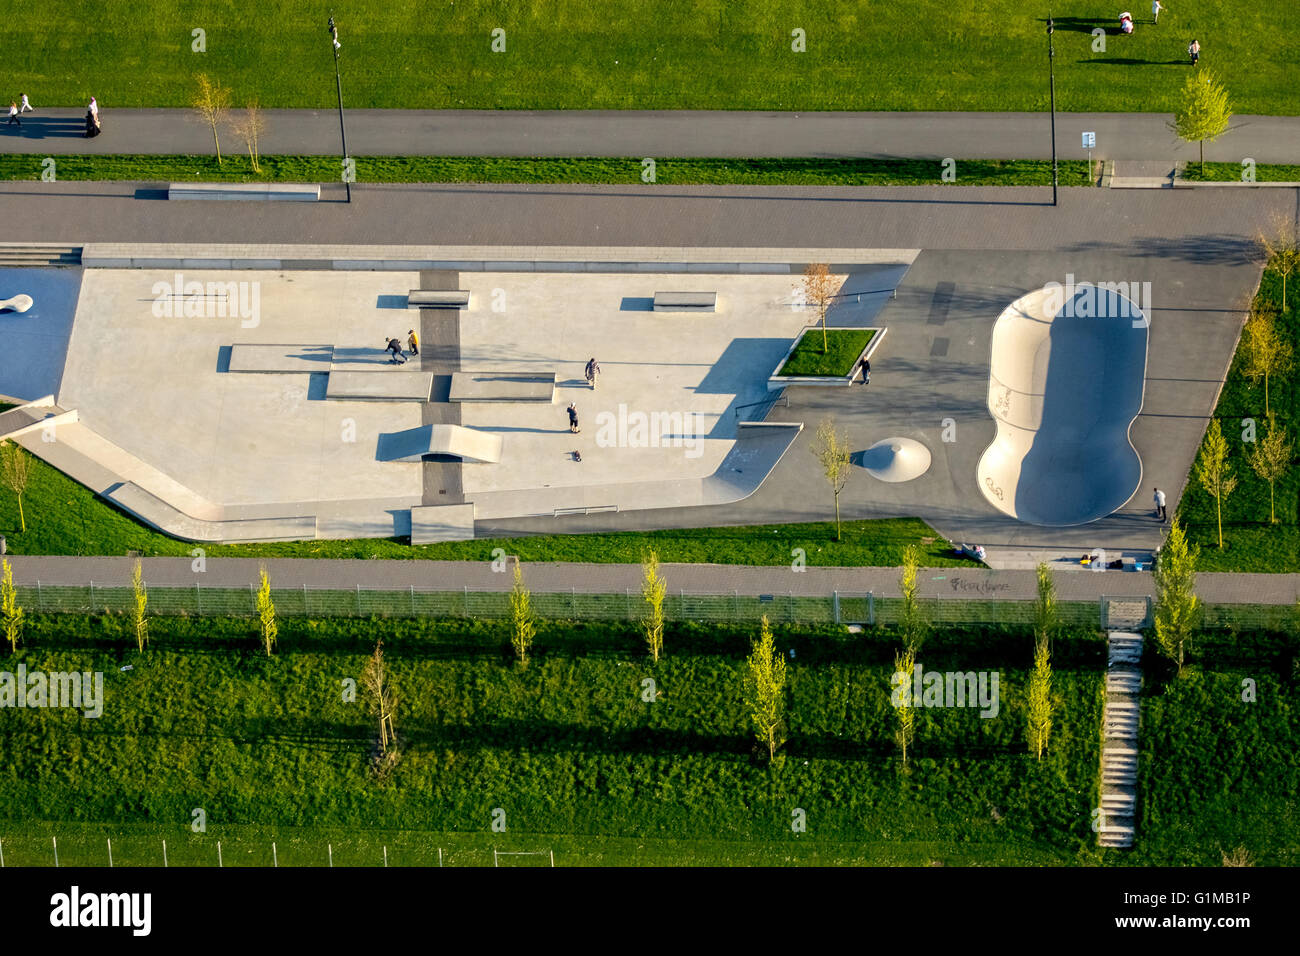 Vista aerea, sport e attrezzature per il gioco lippe Park Herringen kellie condizionata, Hamm, la zona della Ruhr, Renania settentrionale-Vestfalia, Germania Foto Stock